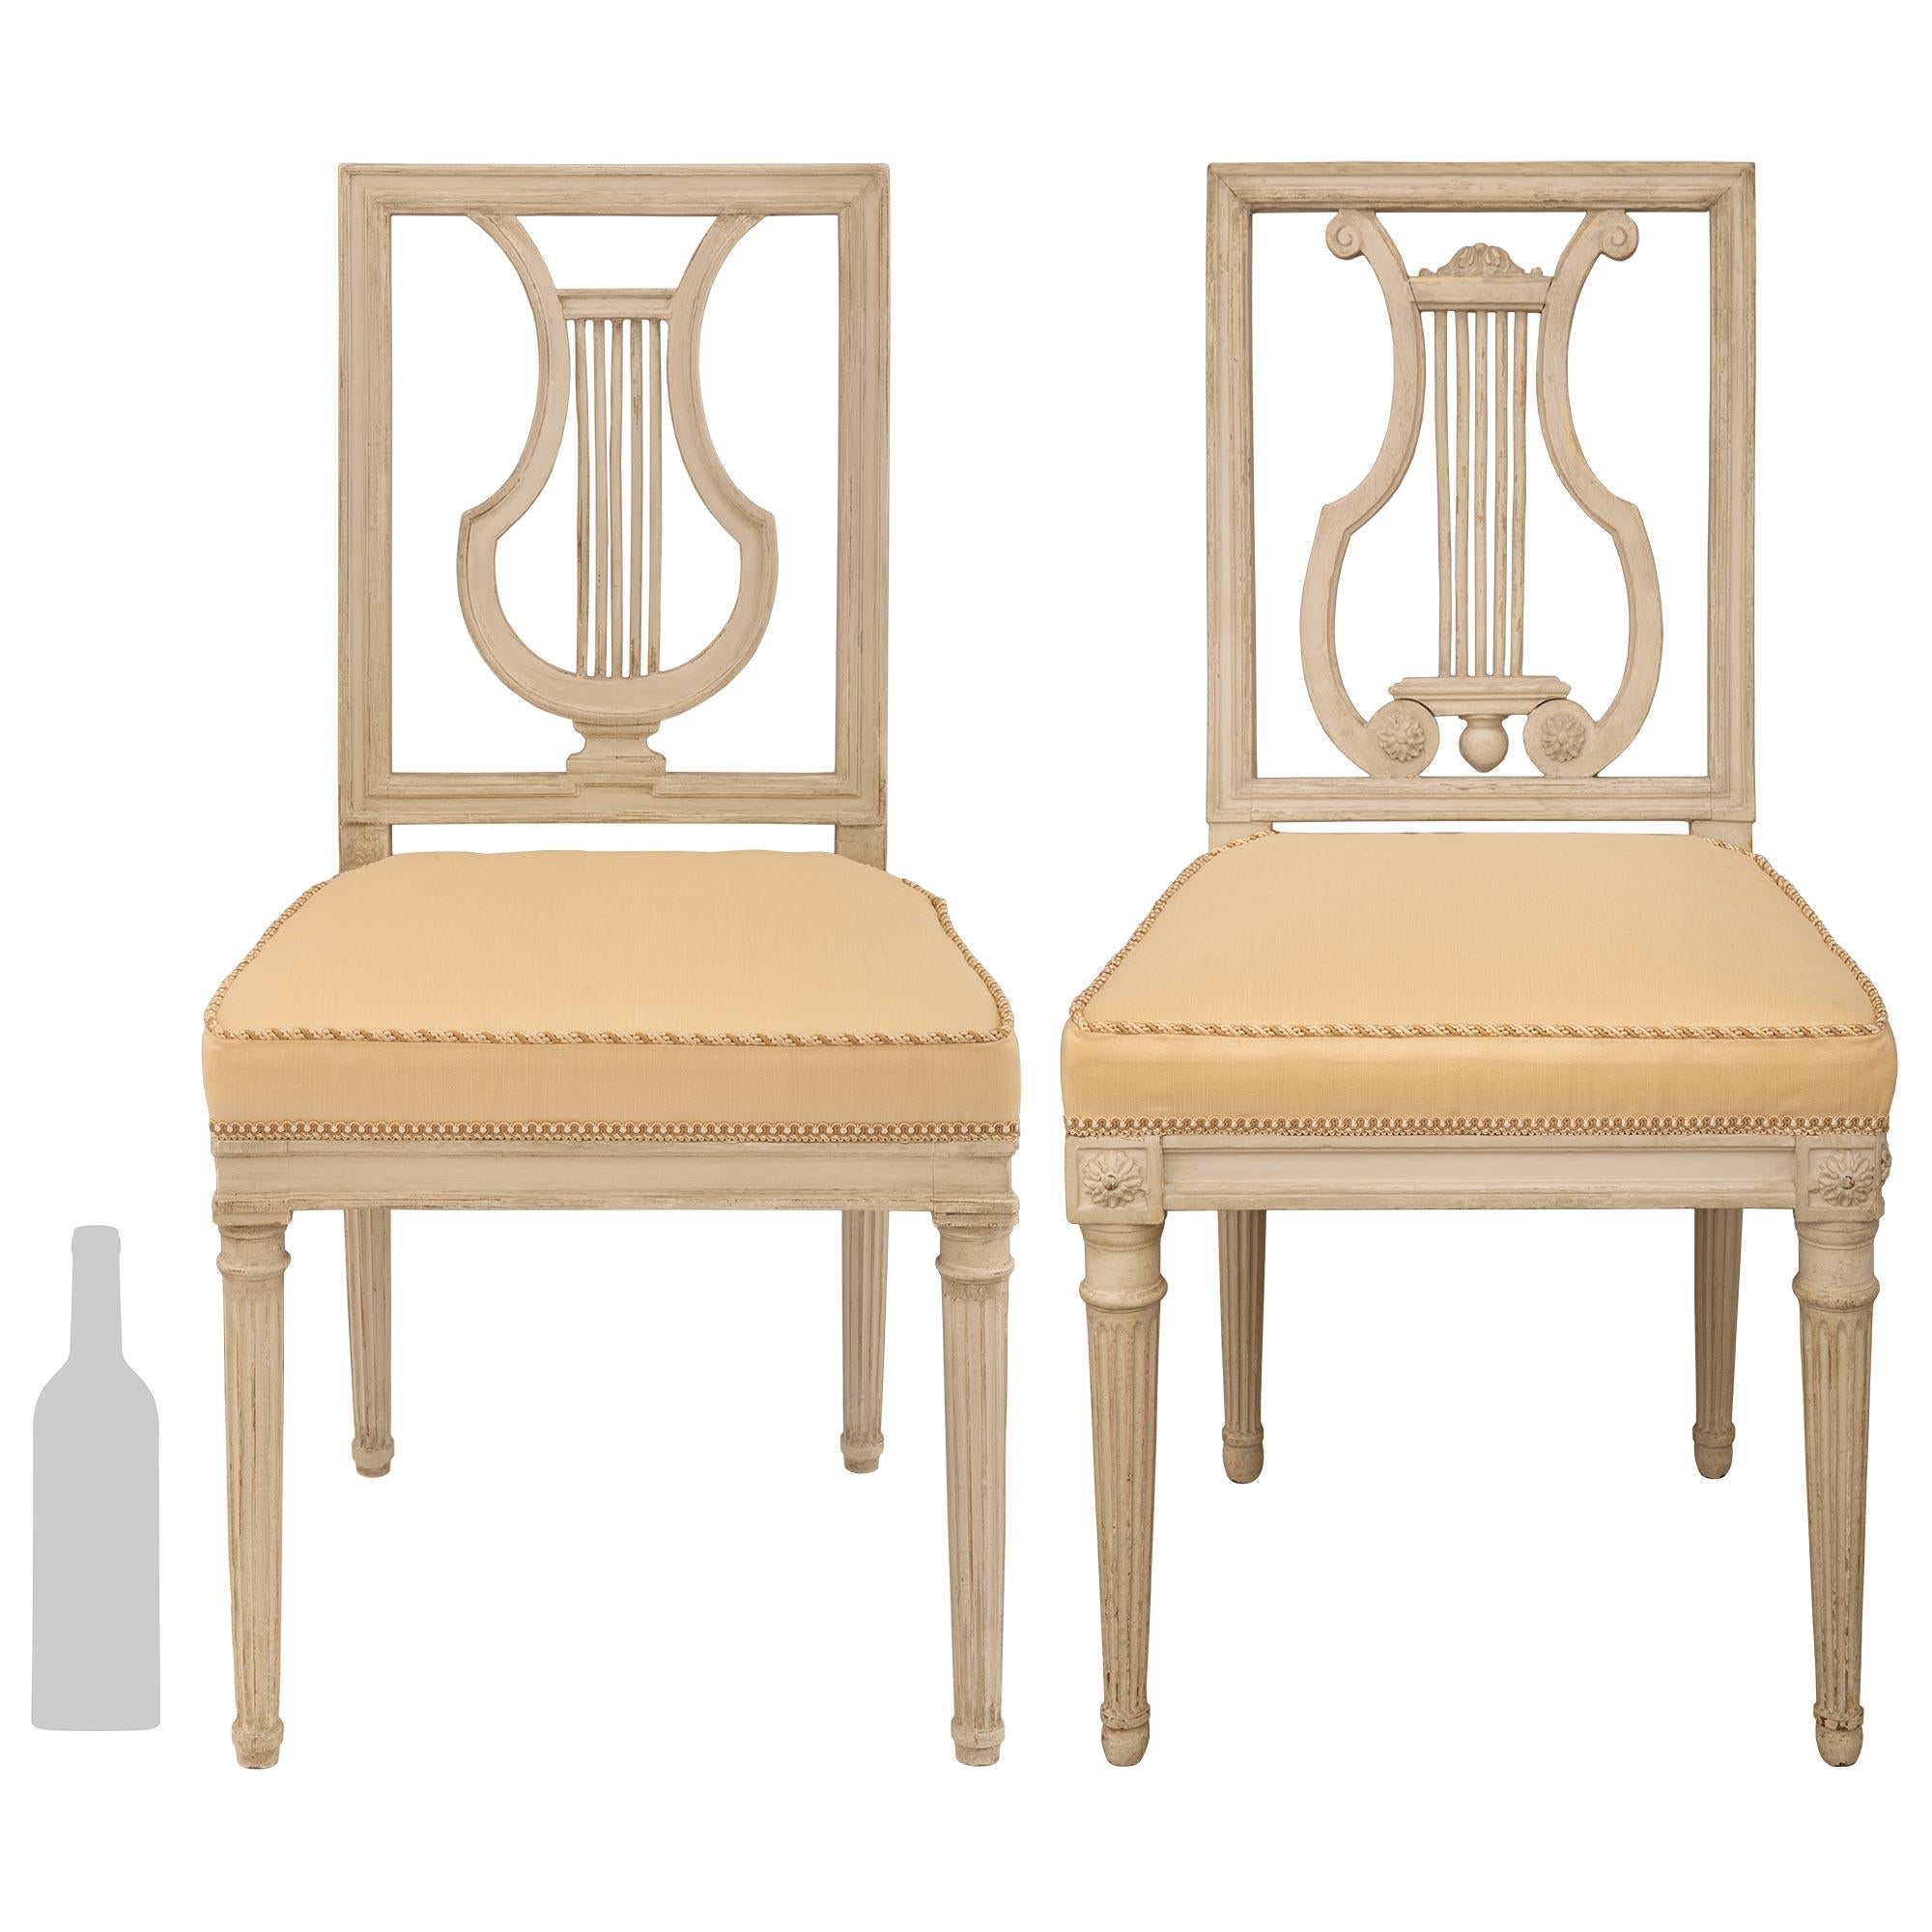 Un très élégant ensemble de douze chaises de salle à manger françaises du XVIIIe siècle d'époque Louis XVI. Chaque chaise, de couleur gris/crème patinée, repose sur des pieds circulaires fuselés et cannelés, avec des bandes sculptées en haut et en